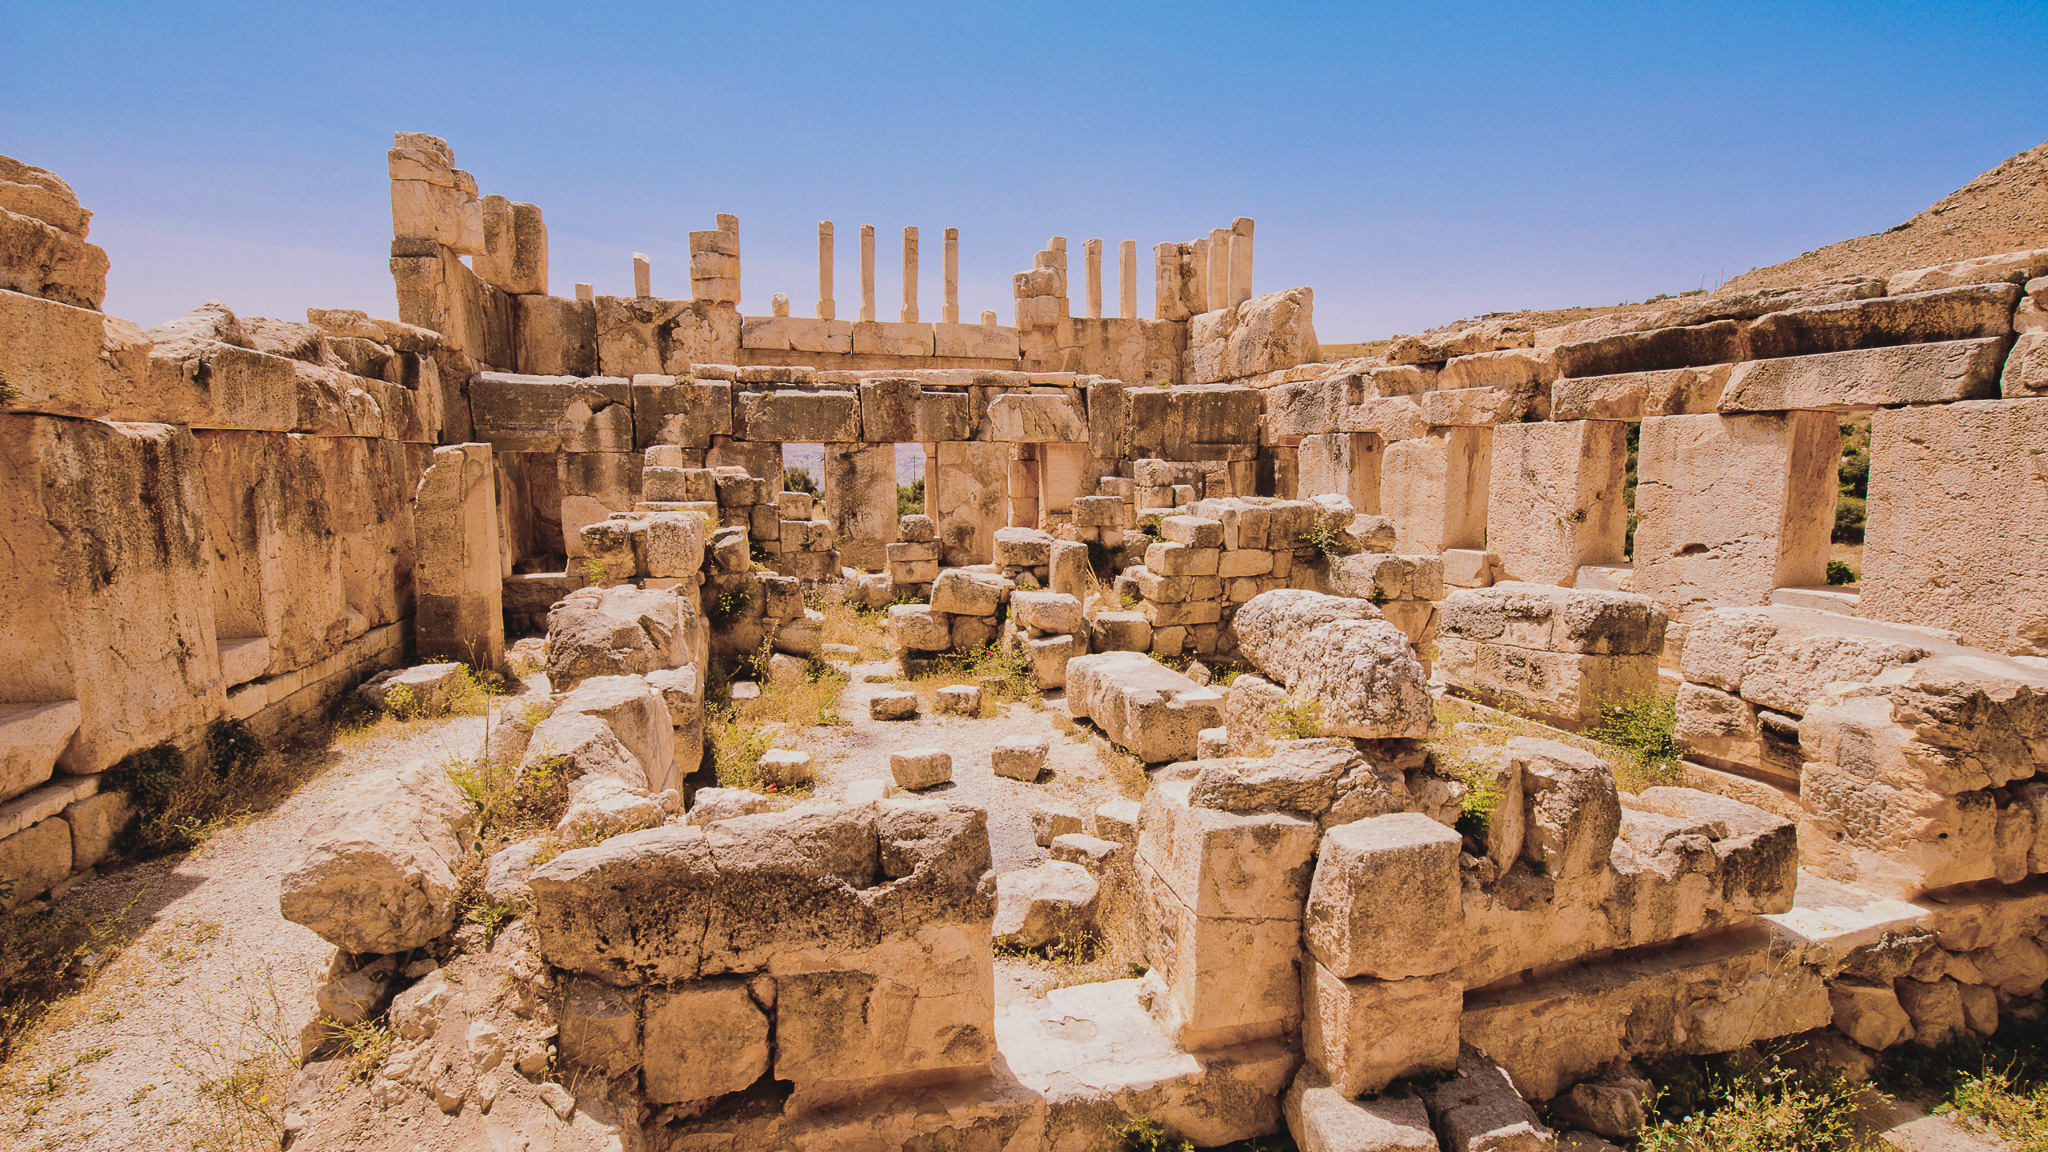 Qasr Al-Abd ruins